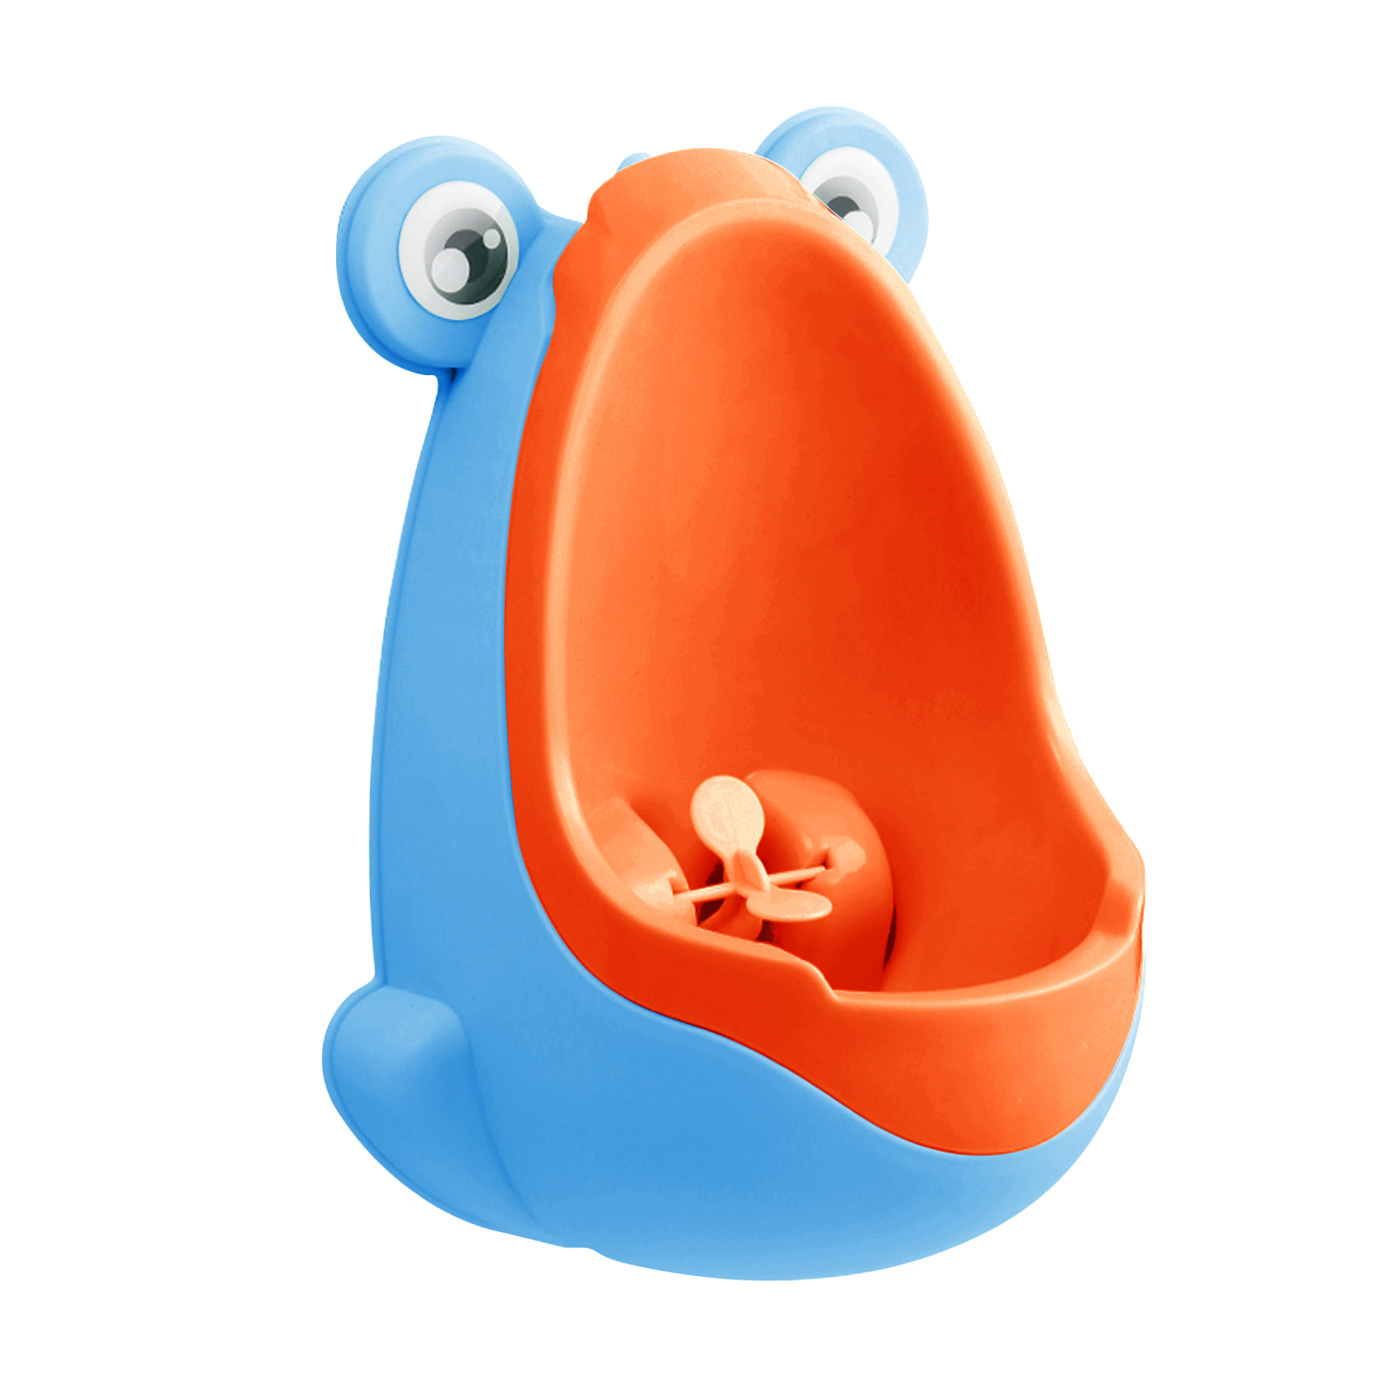 Dětský pisoár - Žába Barvy: modro-oranžová